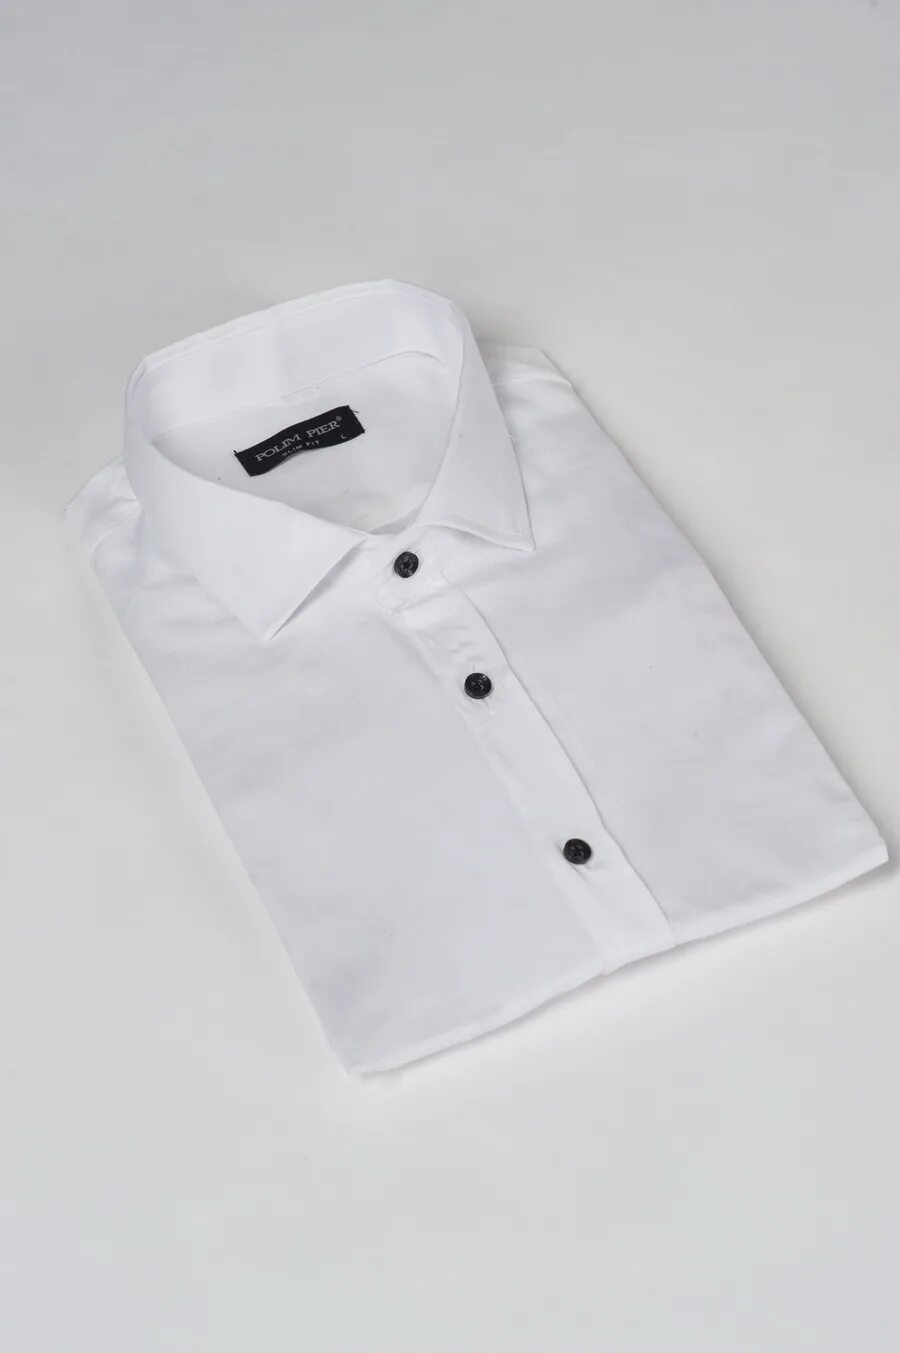 Мужская белая рубашка Zara воротник стойка. Мужская белая рубашка. Белая рубашка с черными пуговицами мужская. Пуговицы на рубашке.